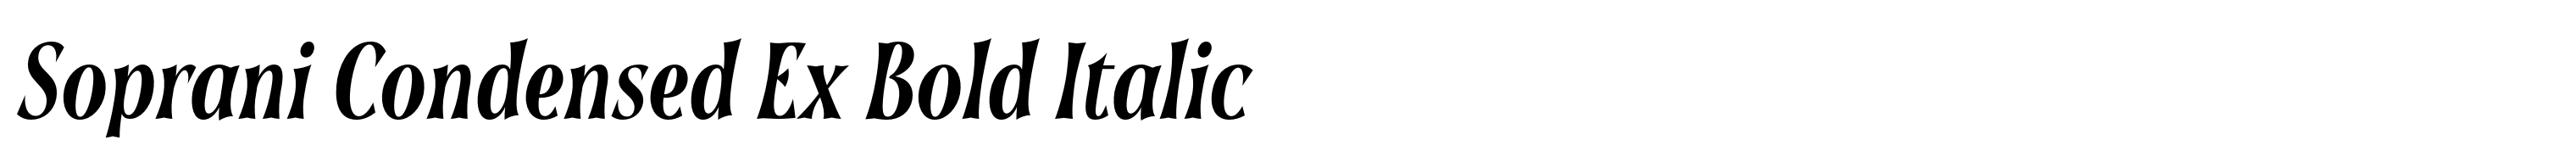 Soprani Condensed Ex Bold Italic